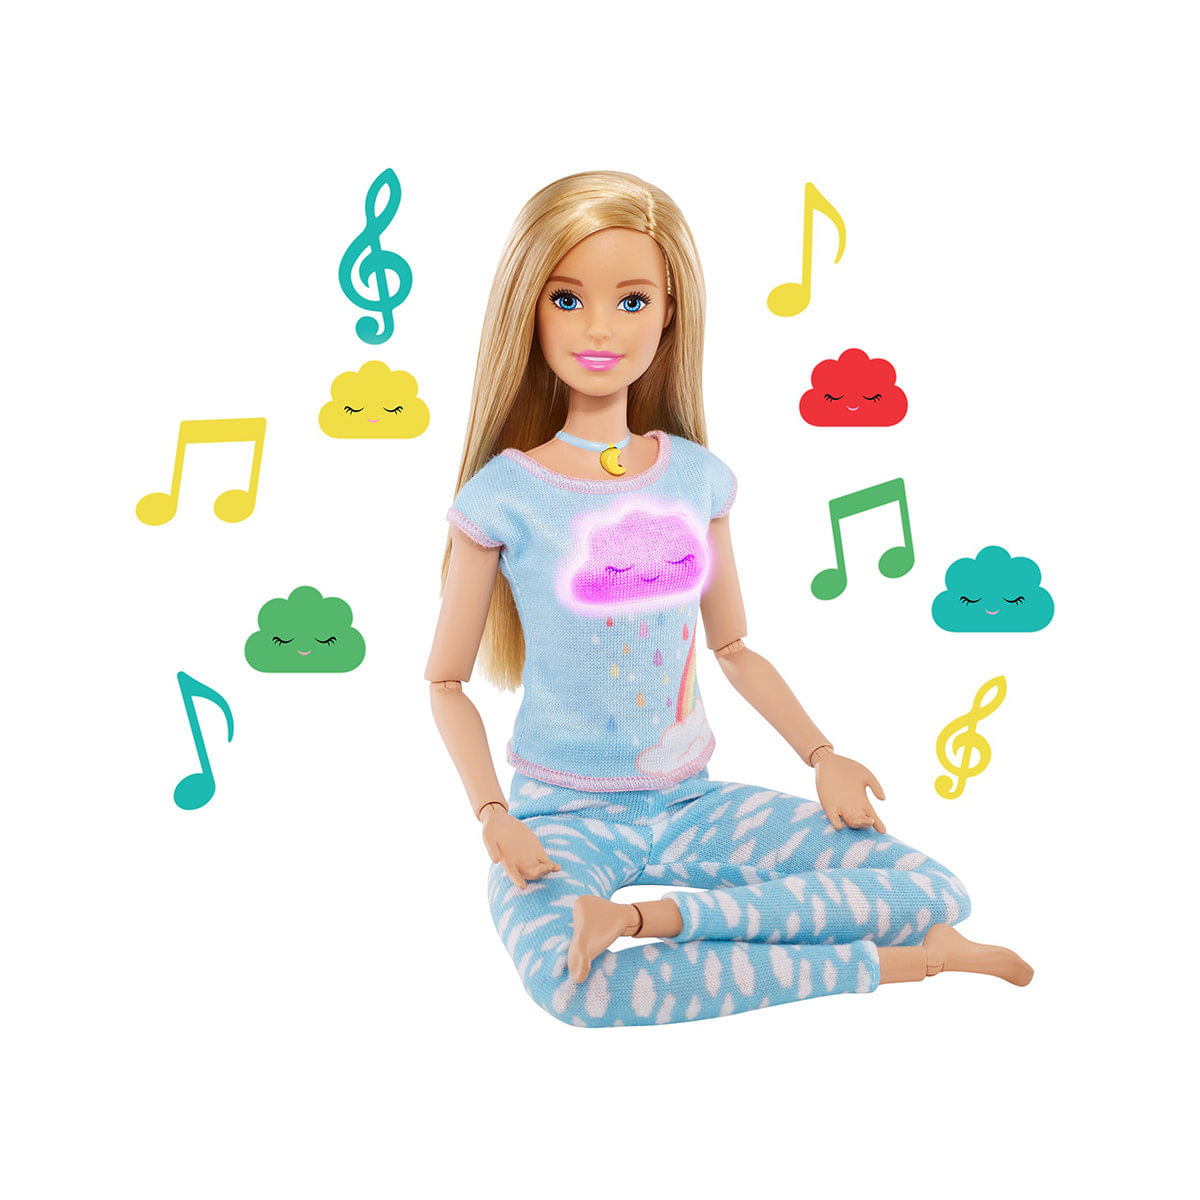 6132081_Barbie-Fashion-Boneca-Medite-Comigo-com-Acessorios-e-Nuvens-de-Emocoes-Mattel_1_Zoom